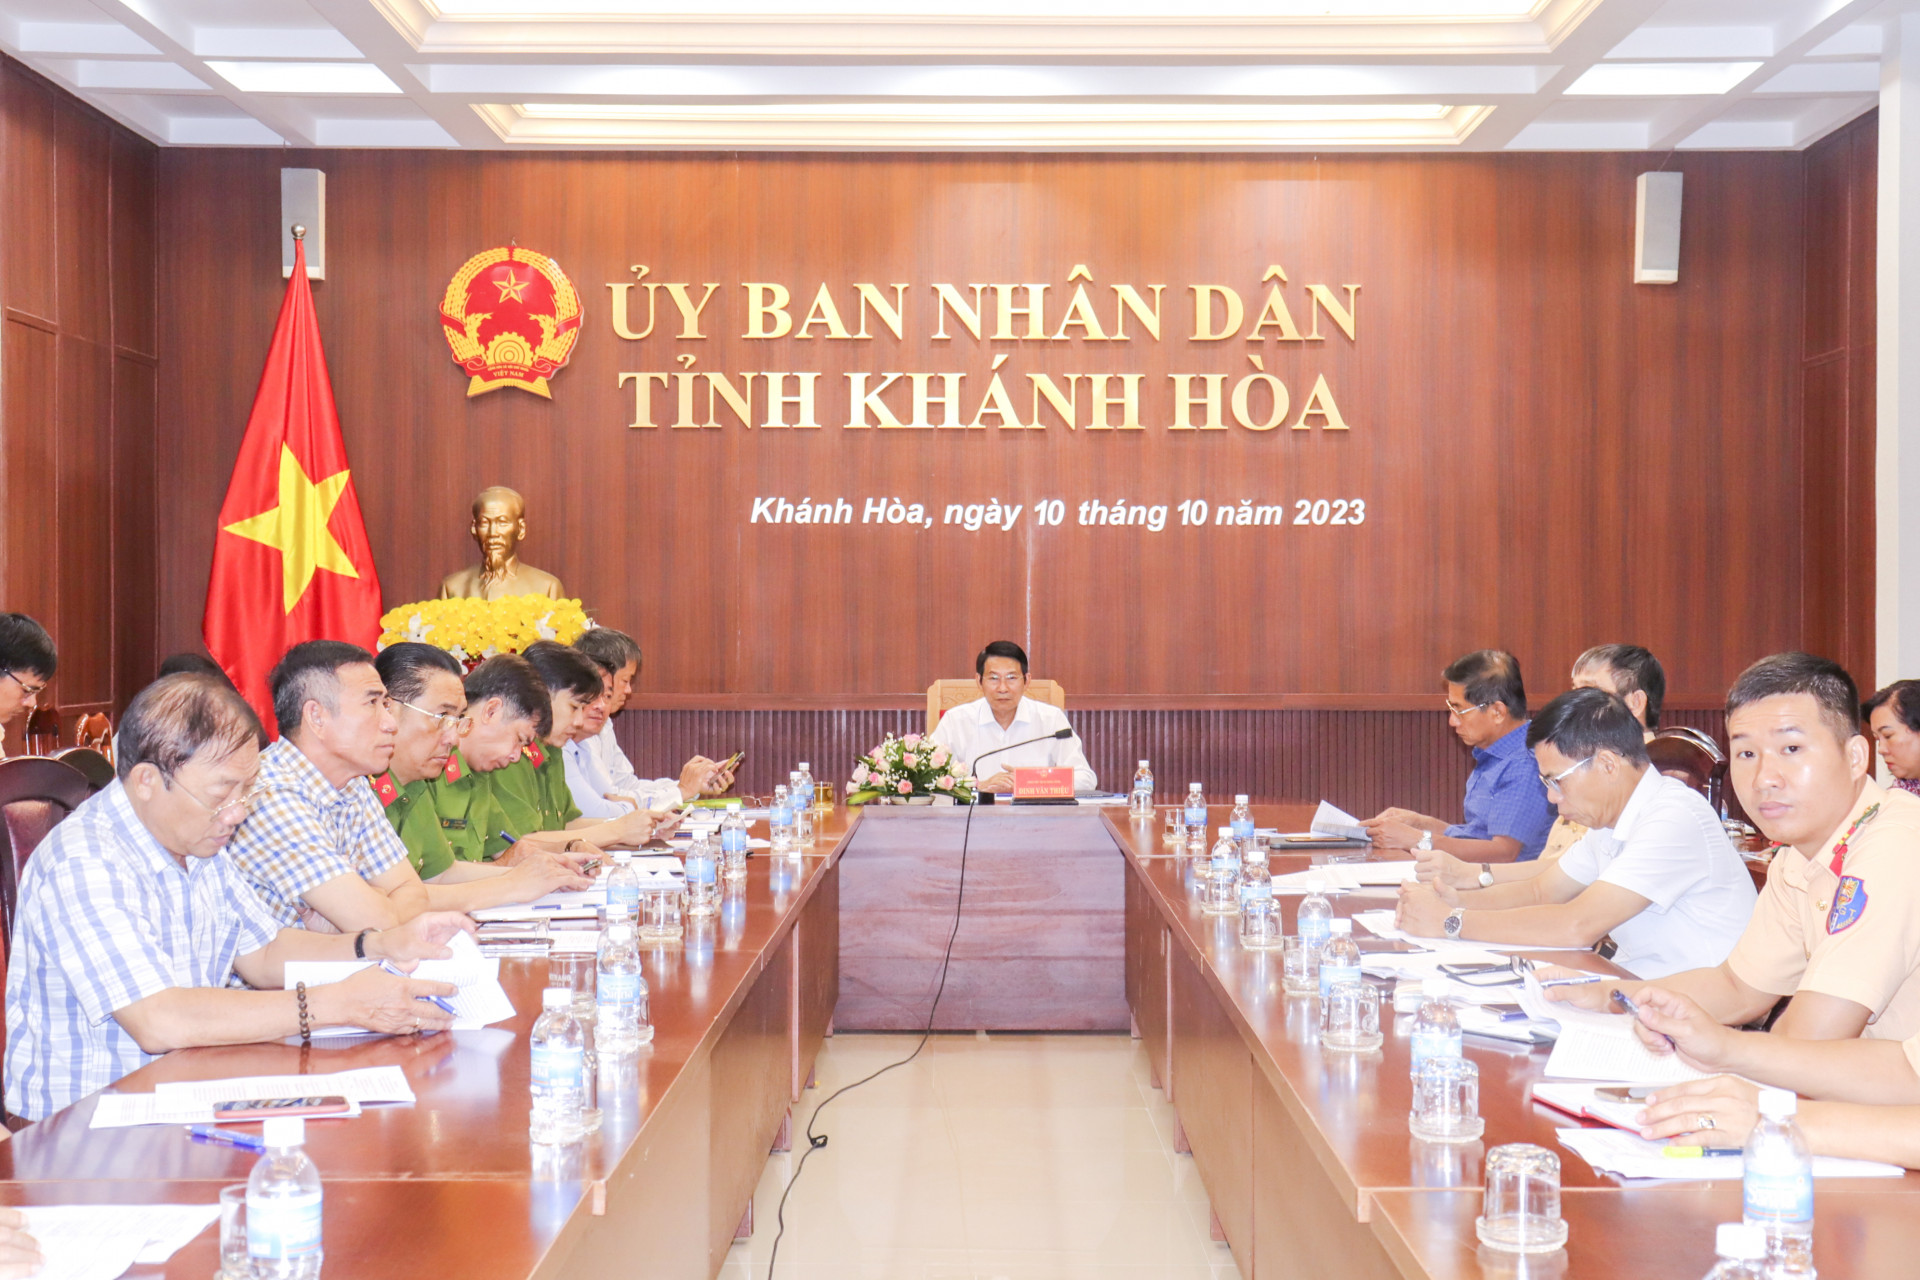 Đồng chí Đinh Văn Thiệu - Phó Chủ tịch UBND tỉnh chủ trì cuộc họp tại điểm cầu Khánh Hòa.